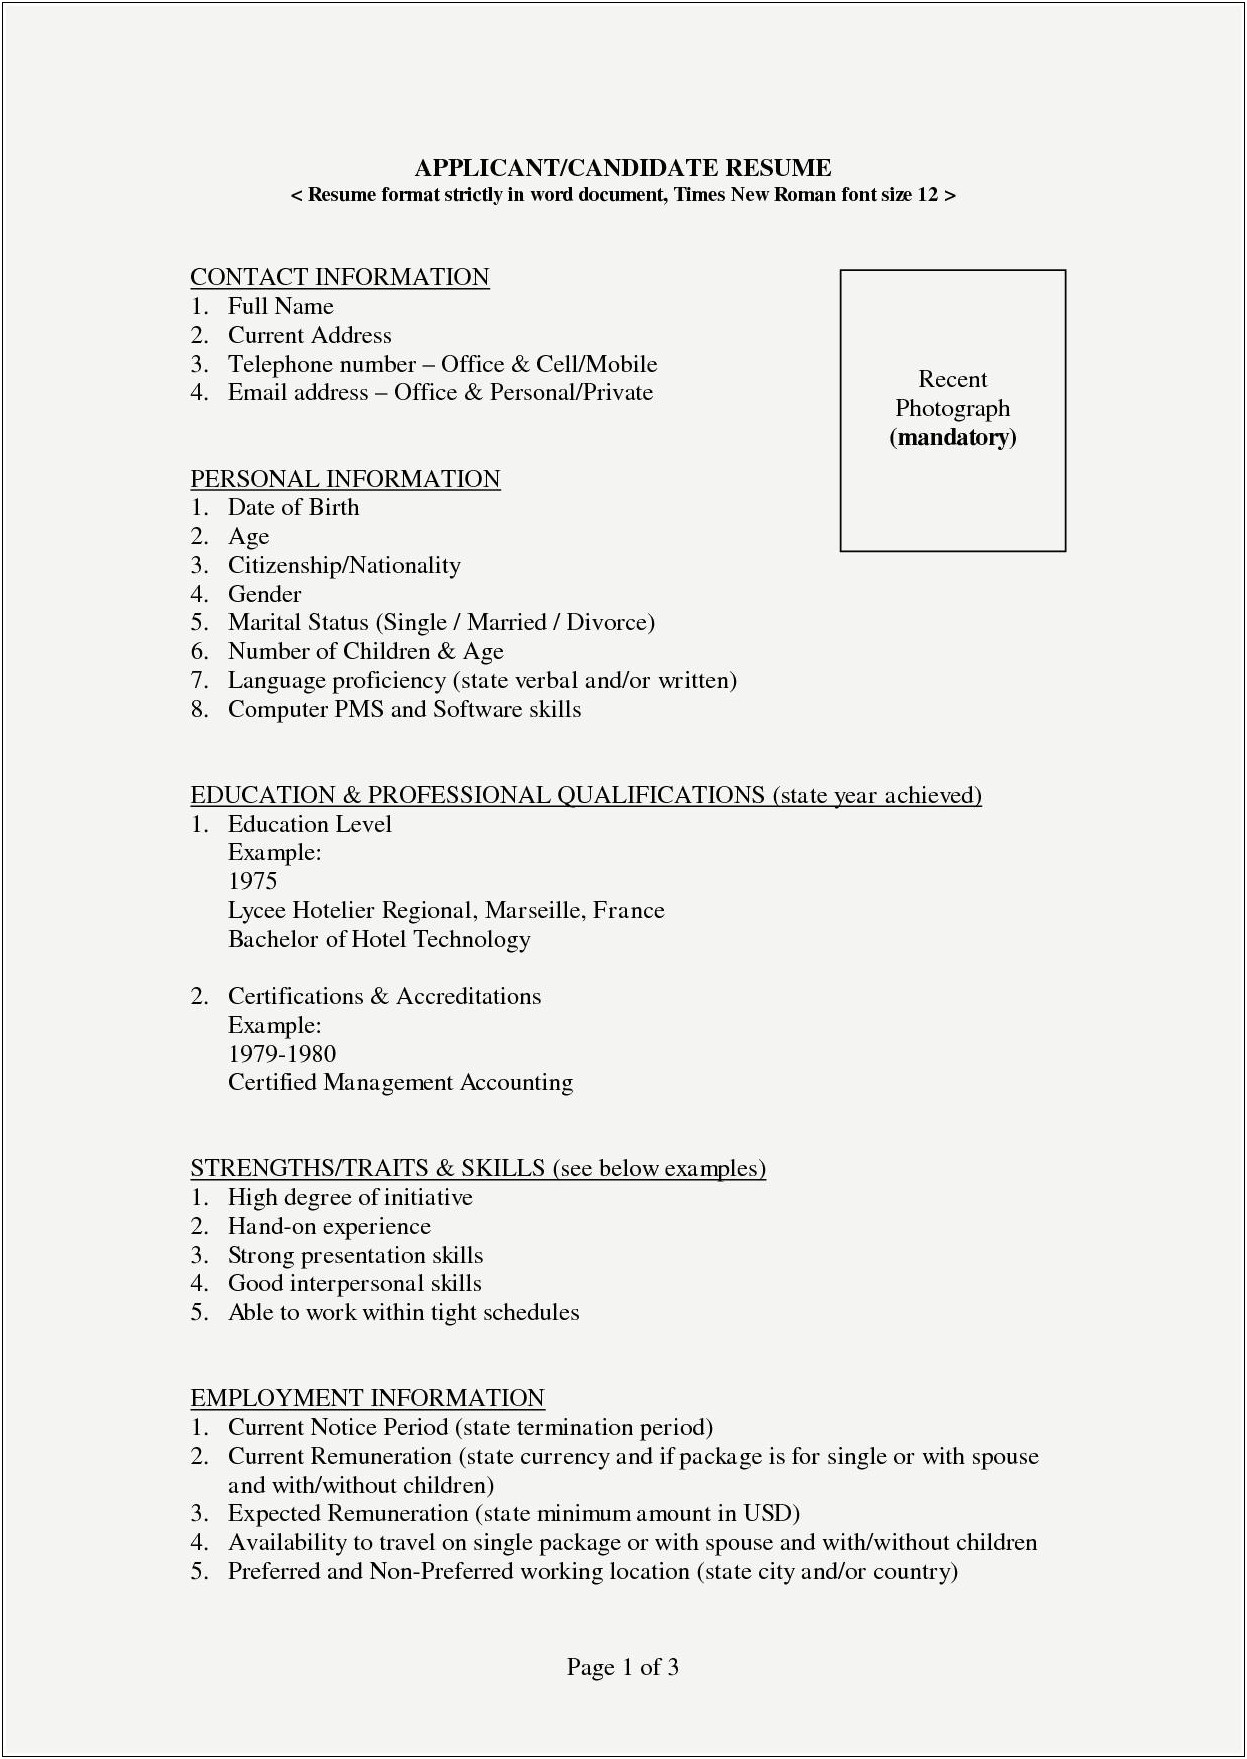 Resume Format Bams Doctor For Jobs